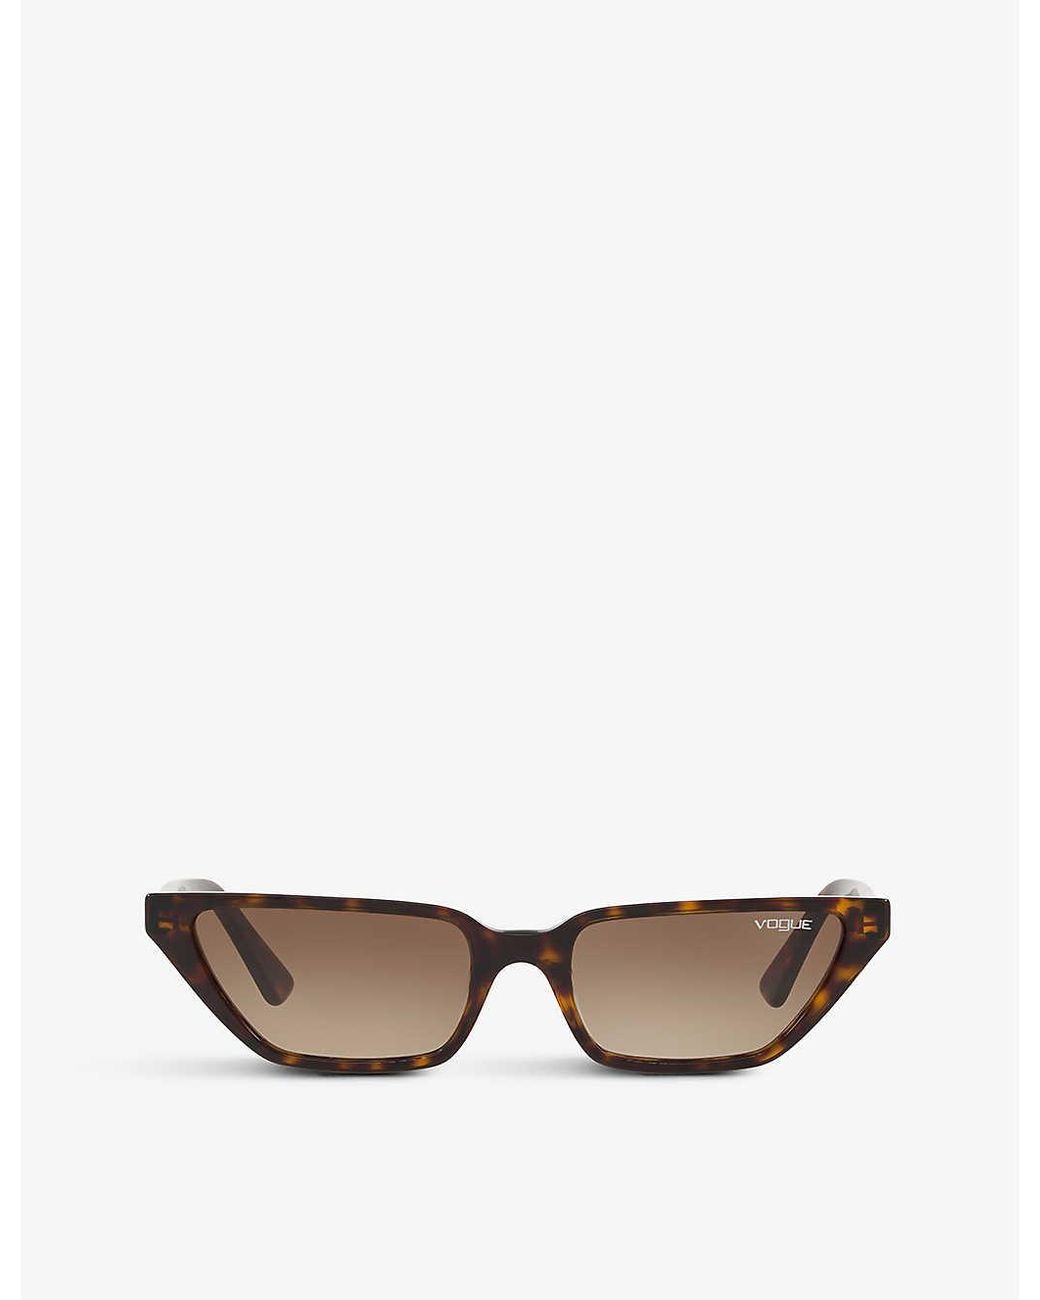 Vogue Gigi Hadid Vo5235s Cat-eye Sunglasses in White | Lyst UK